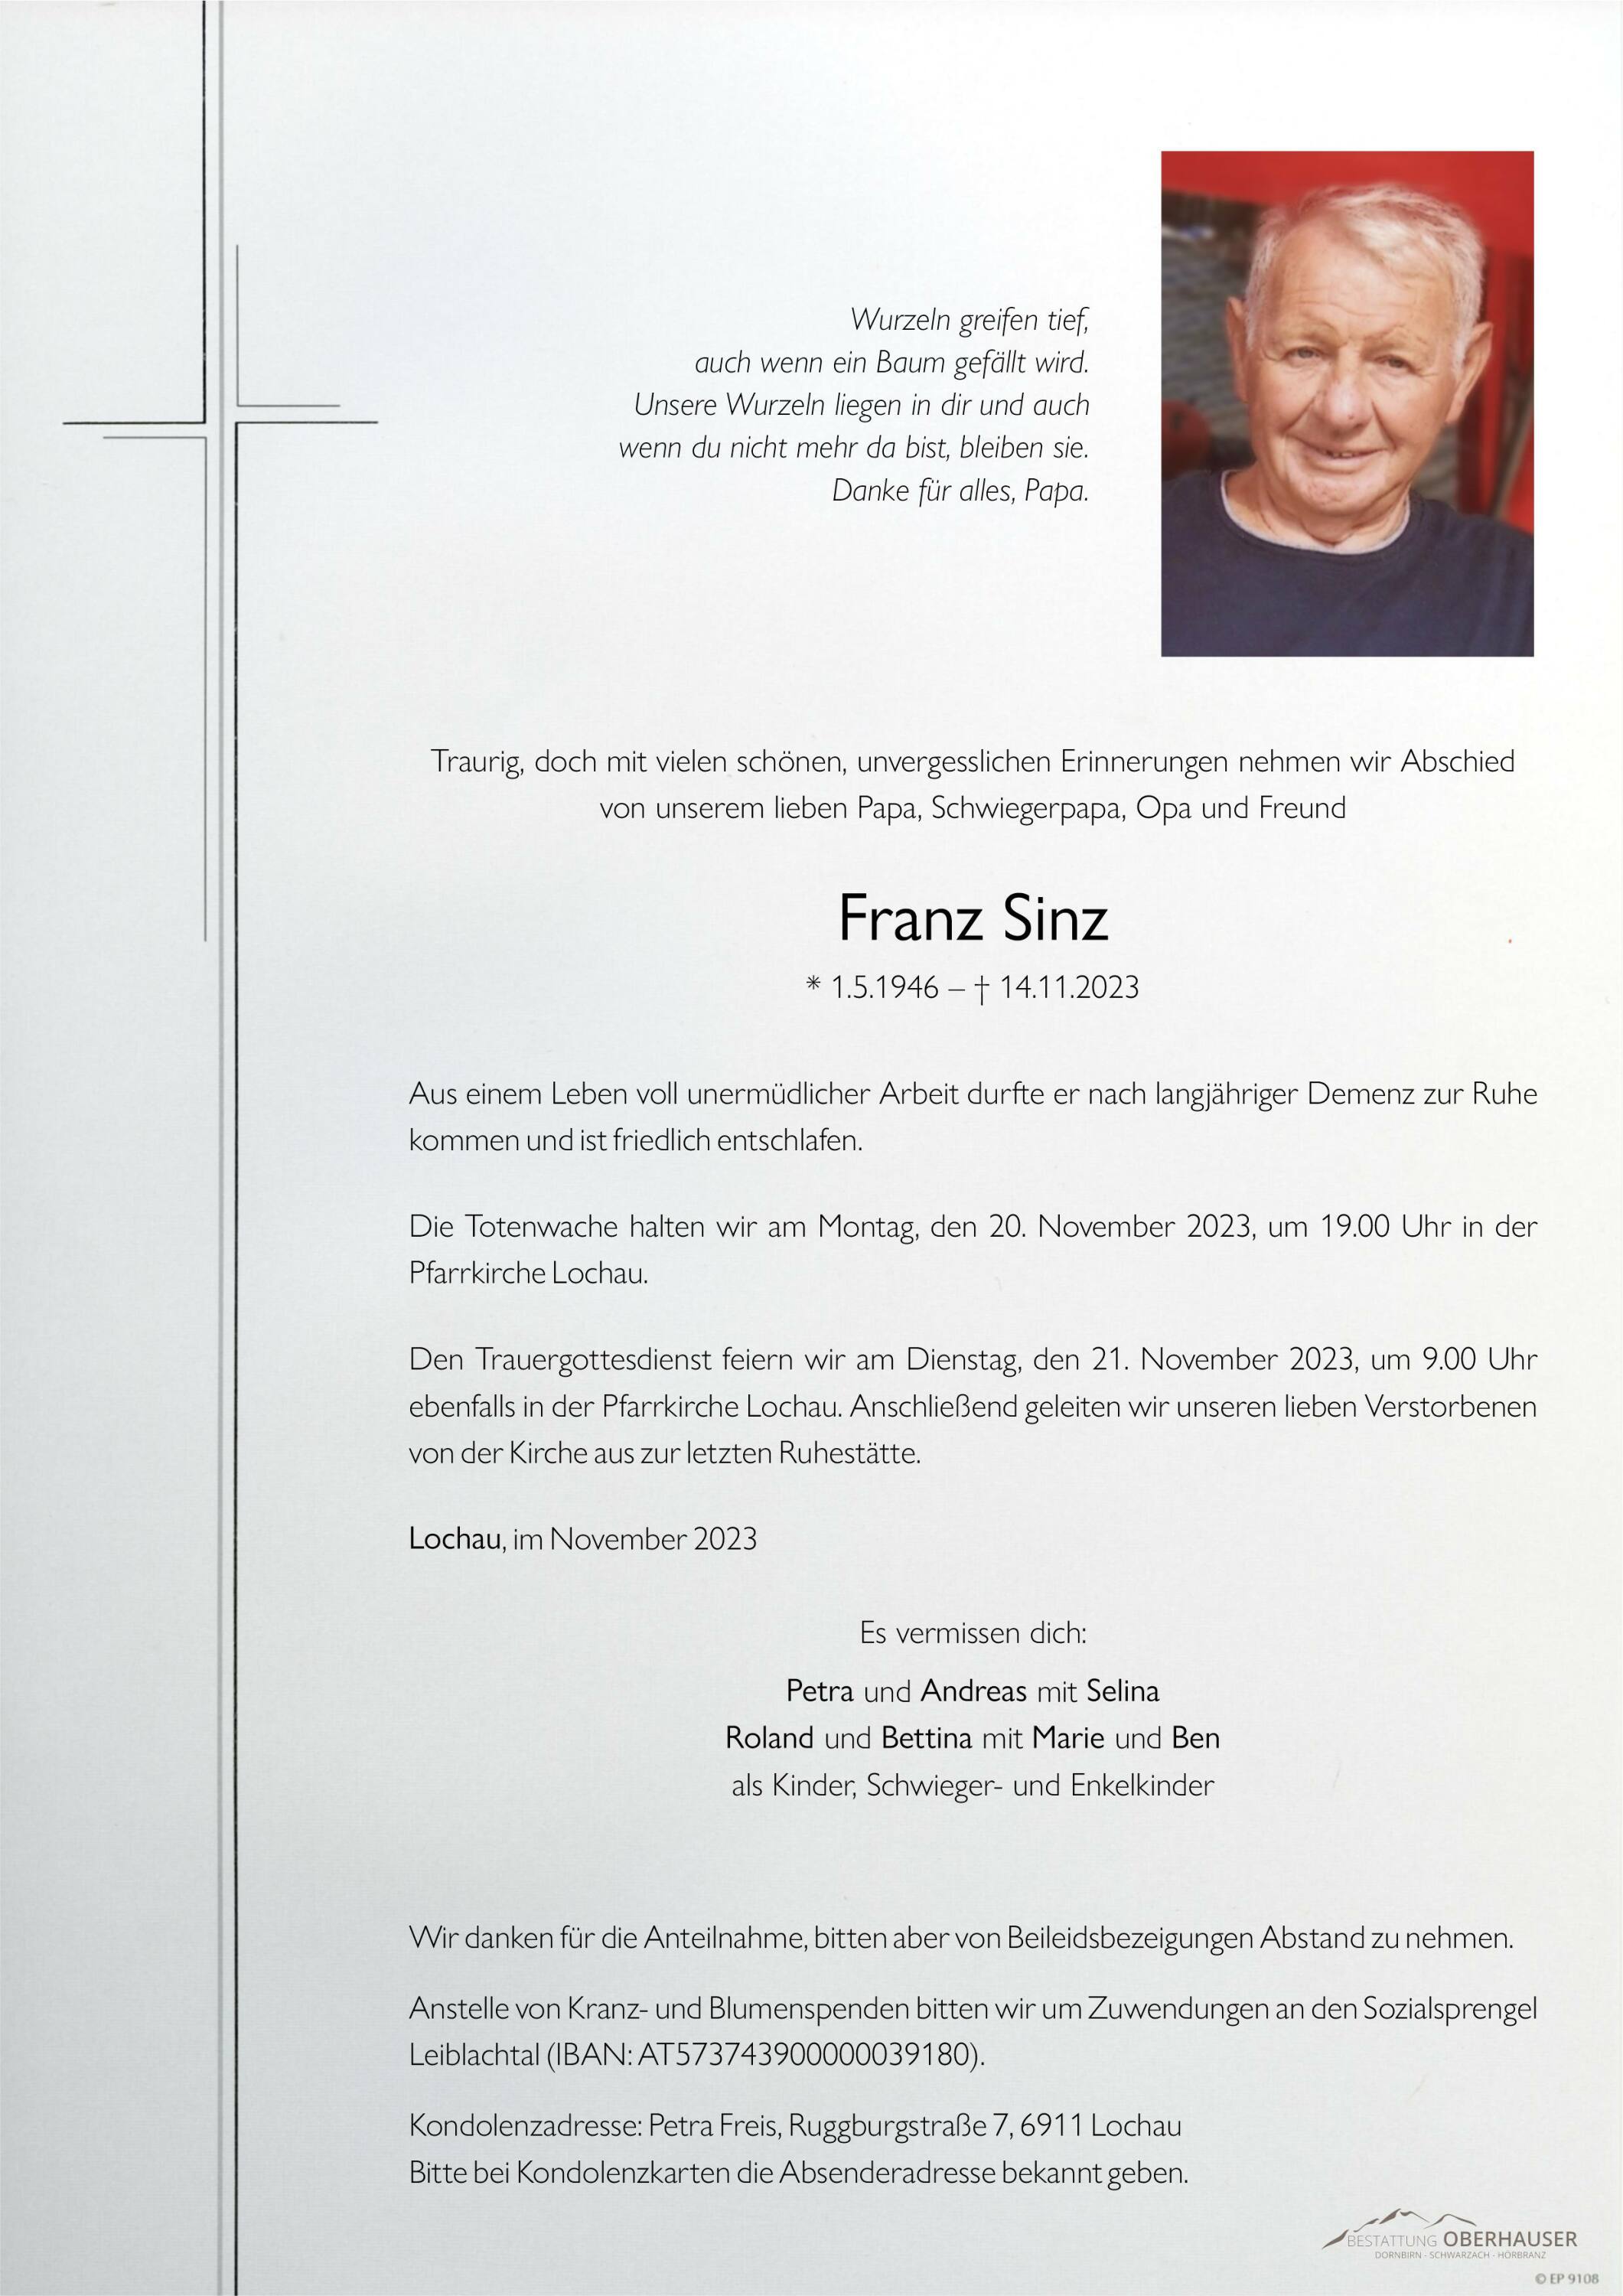 Franz Sinz